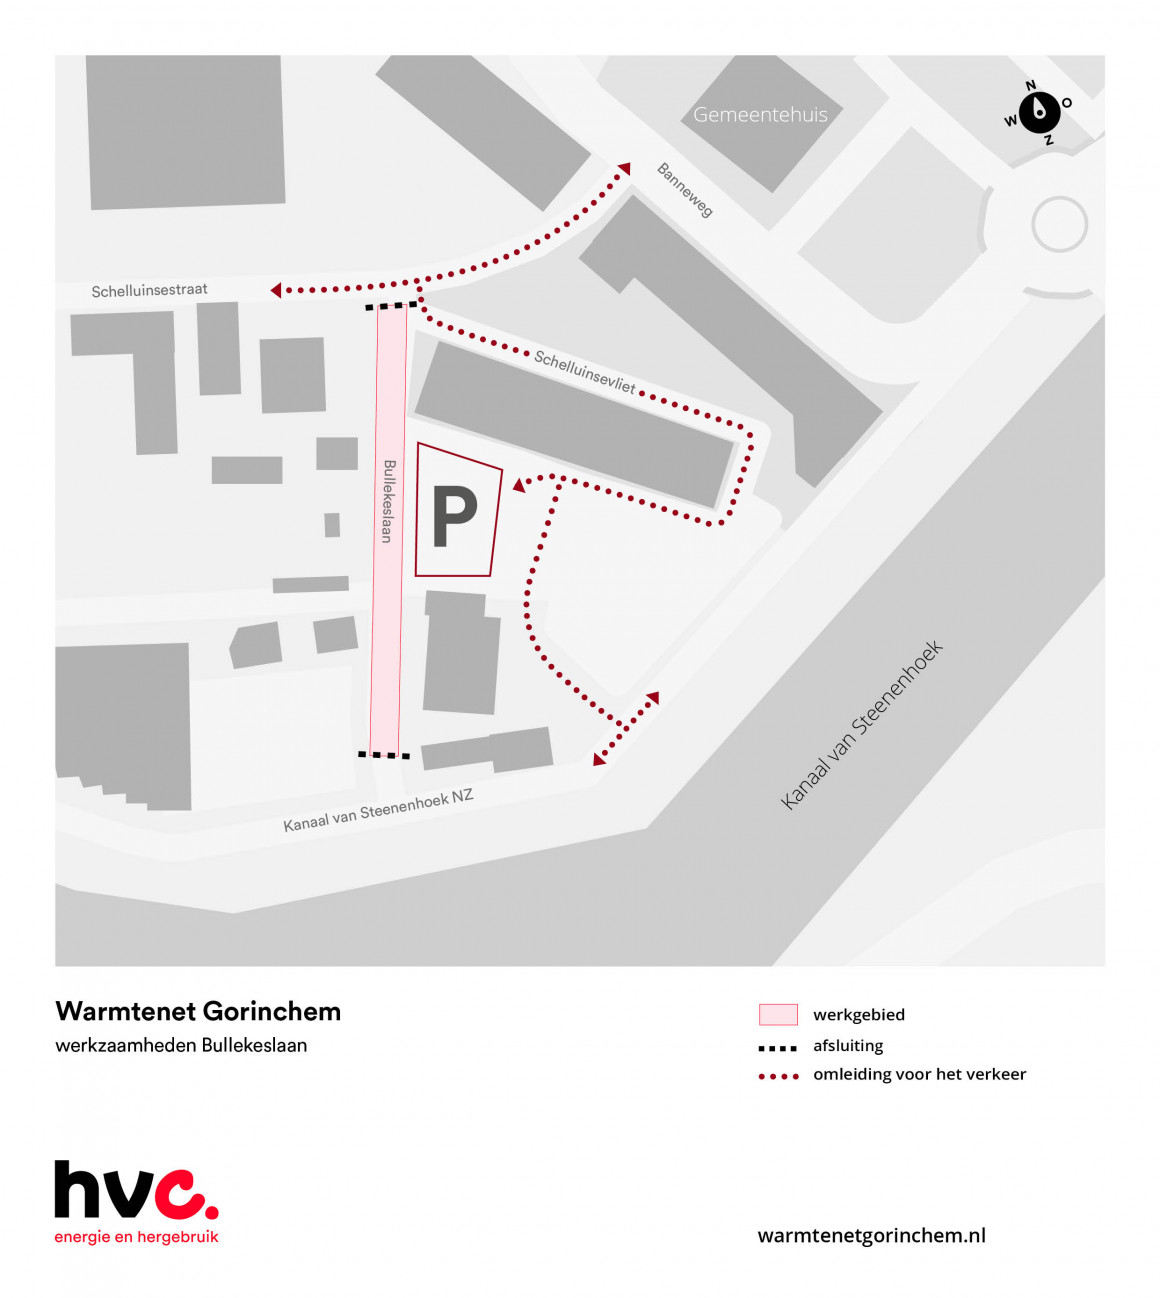 Plattegrond met daarop de locatie van de werkzaamheden in de Bullekeslaan in Gorinchem